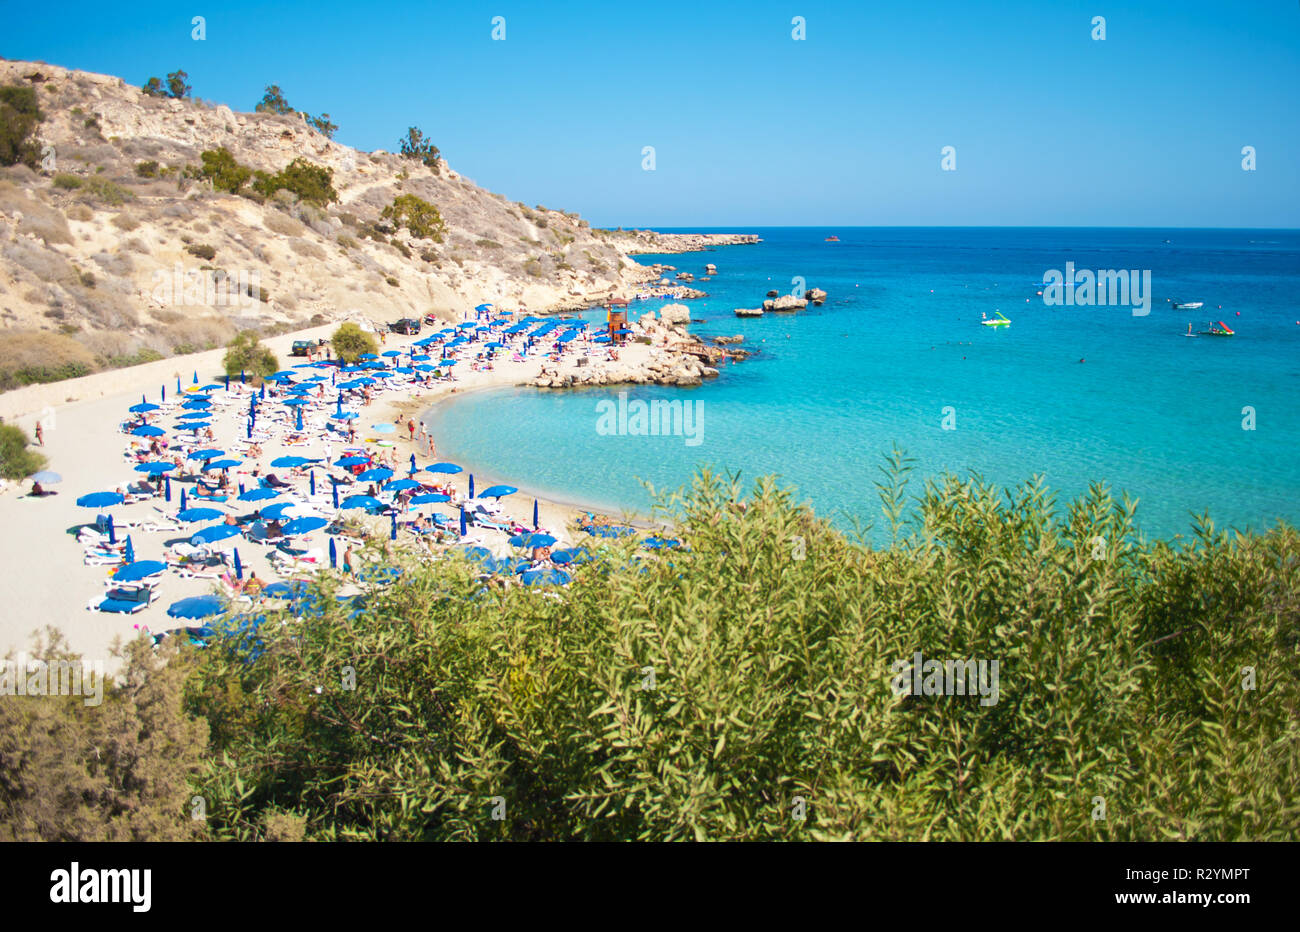 Immagine di Konnos spiaggia nei pressi di Agia Napa, Cipro. Blu molte sedie a sdraio e ombrelloni sulla sabbia bianca nei pressi di blu trasparente di acqua in una baia e le colline rocciose. Foto Stock